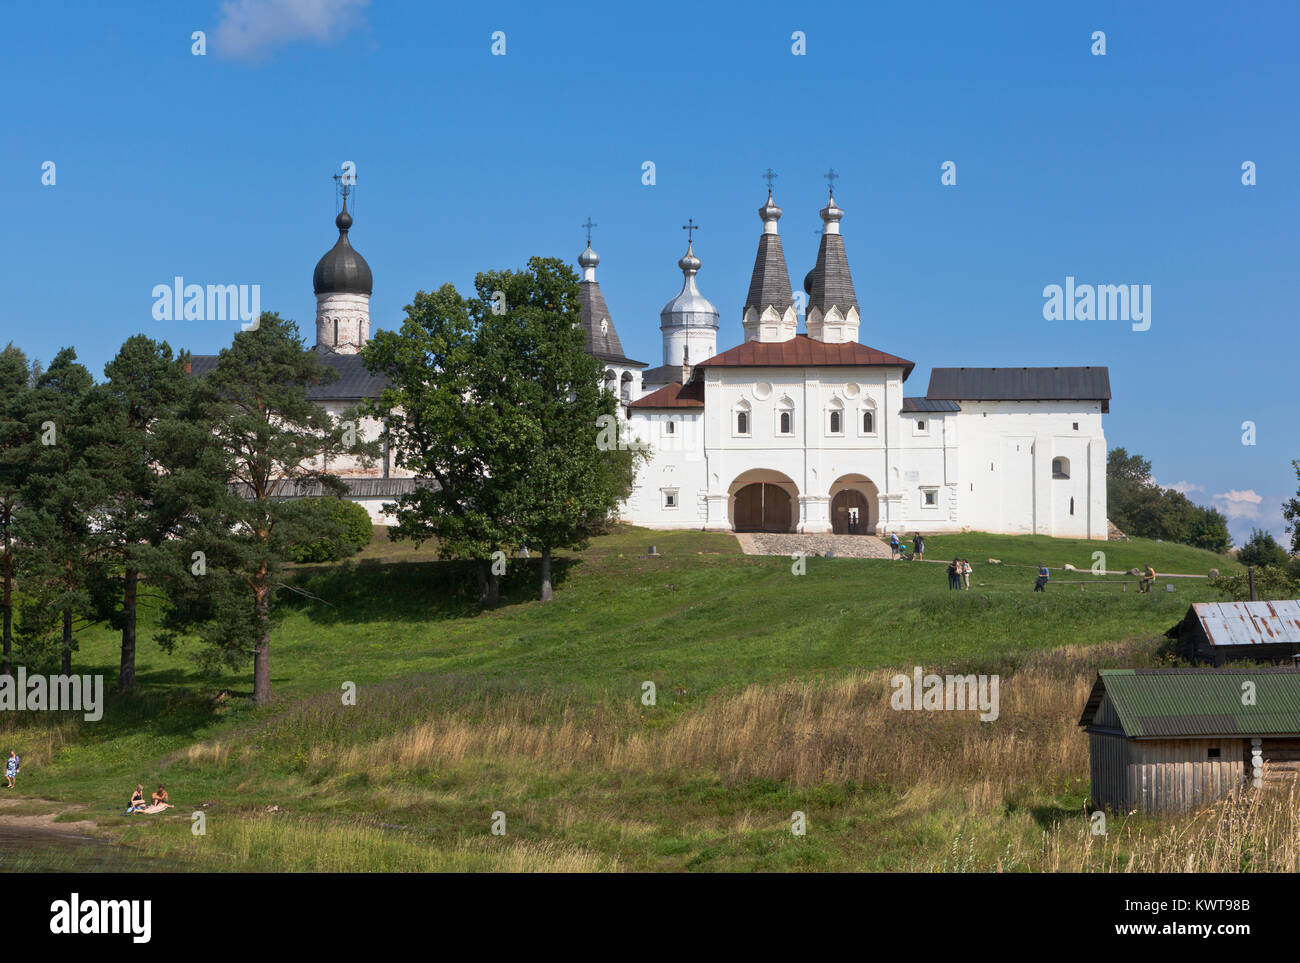 Ferapontovo, Vologda regione, Russia - Agosto 9, 2015: vista Monastero di Ferapontov dalla riva del lago Foto Stock